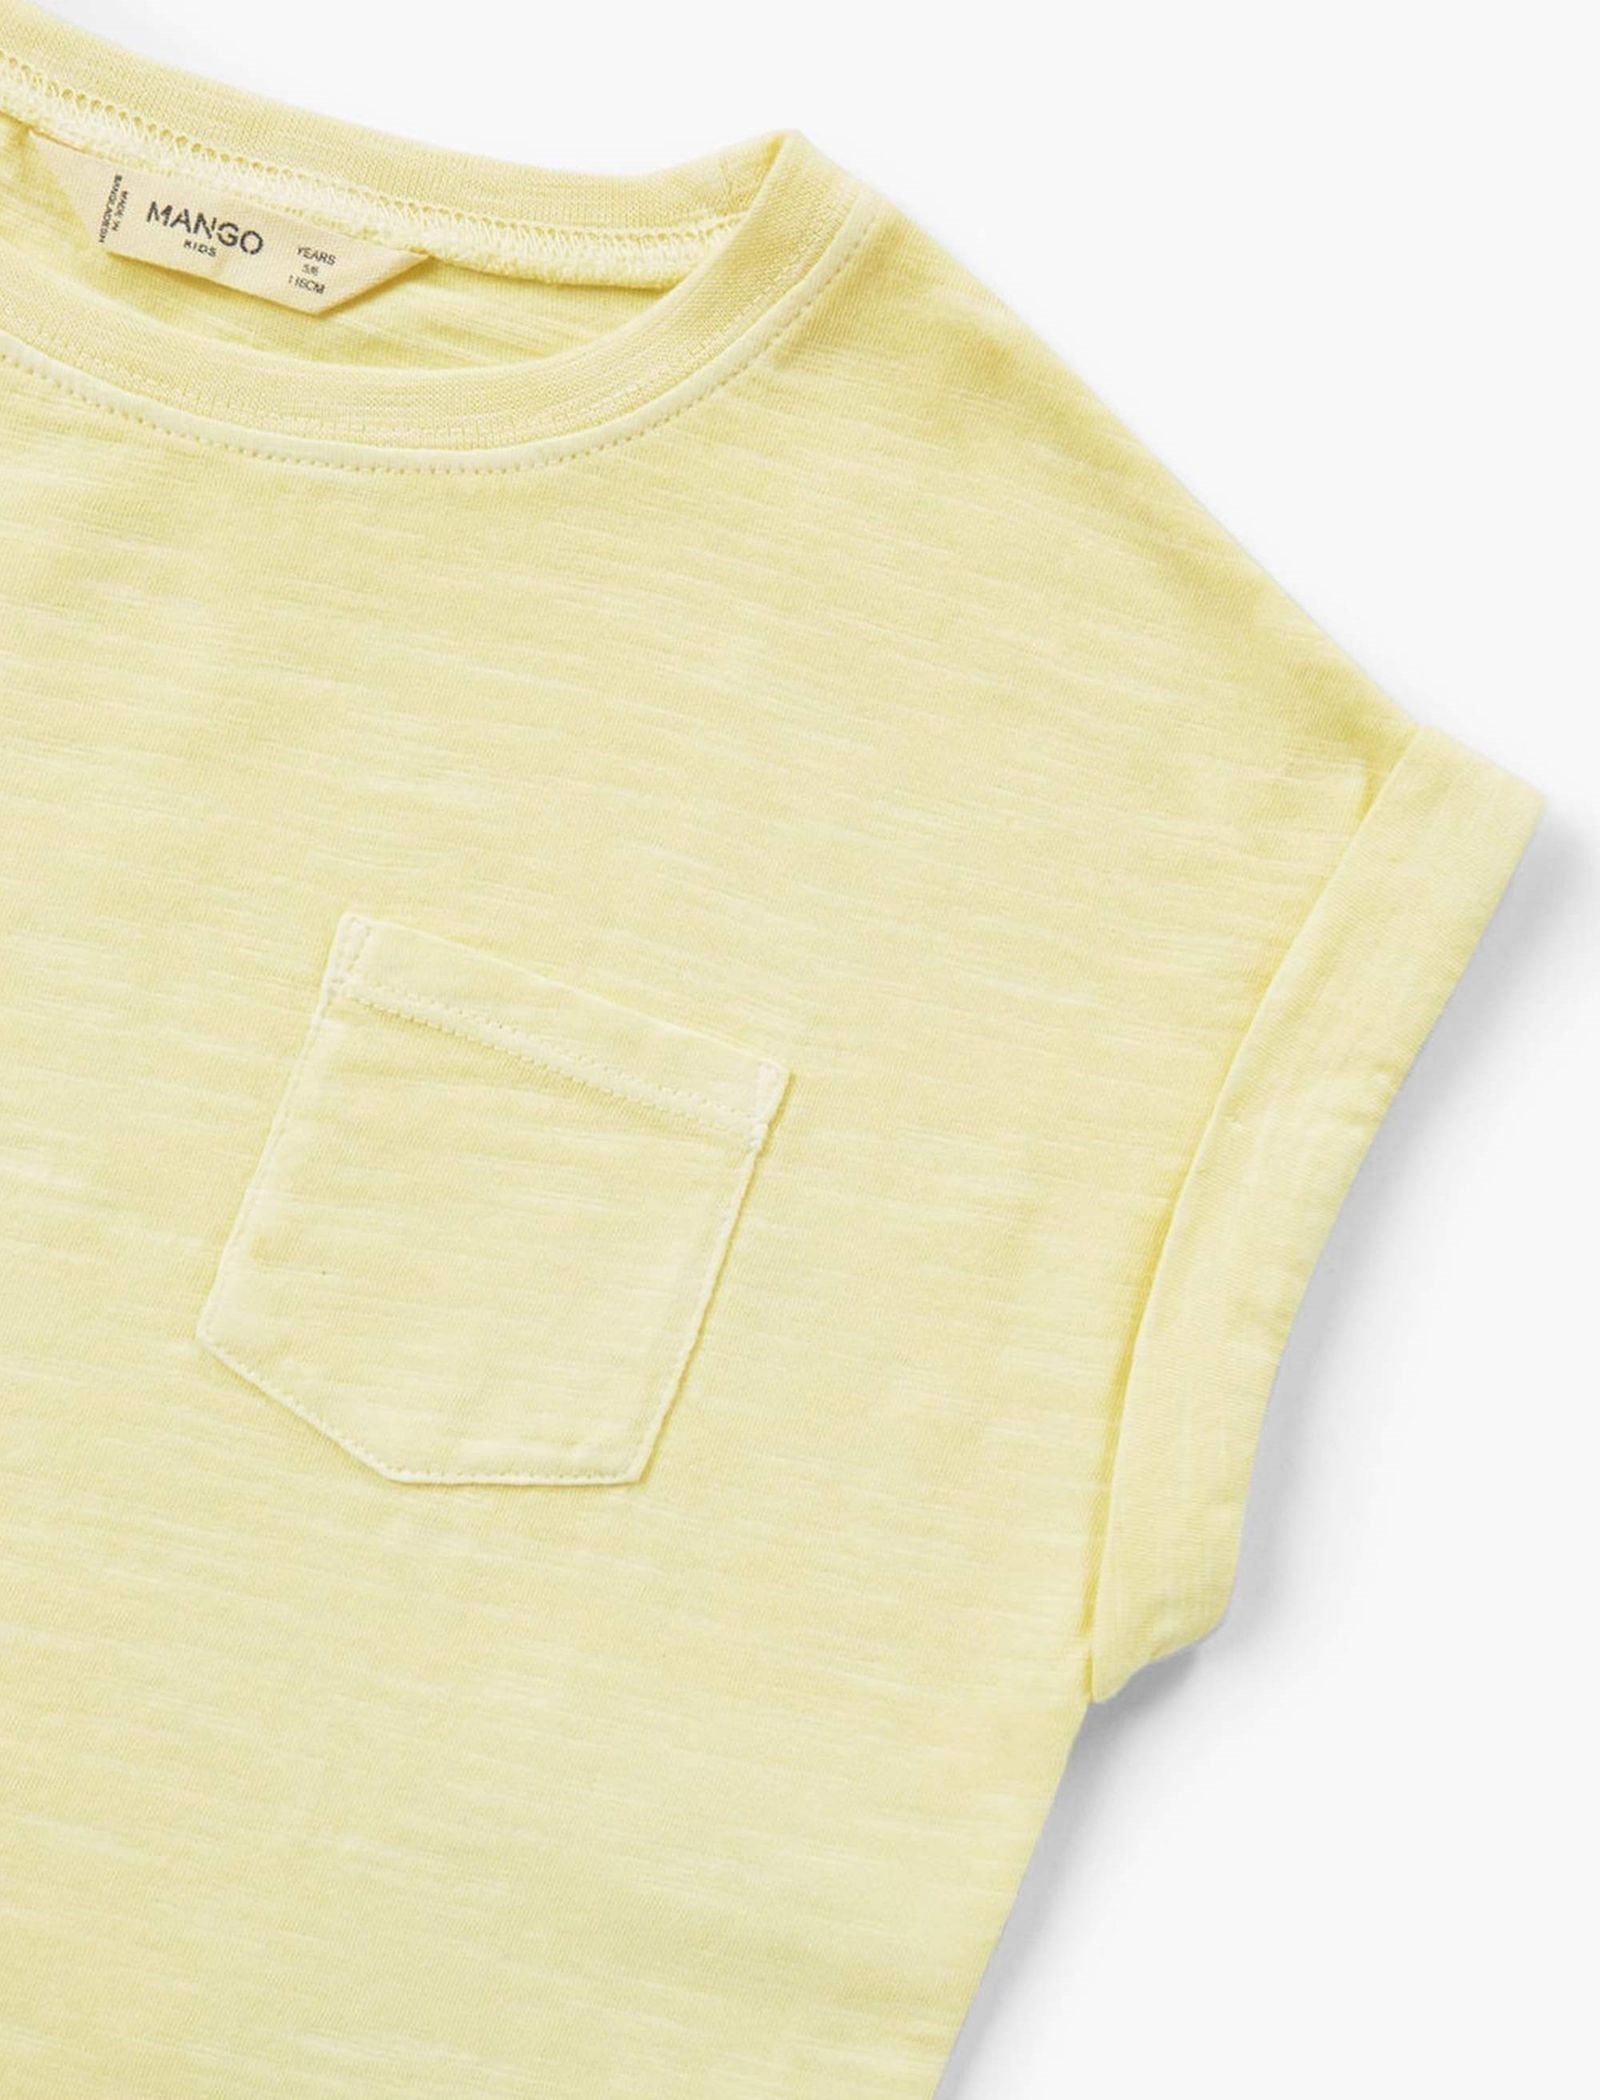 تی شرت نخی یقه گرد دخترانه - مانگو - زرد - 5